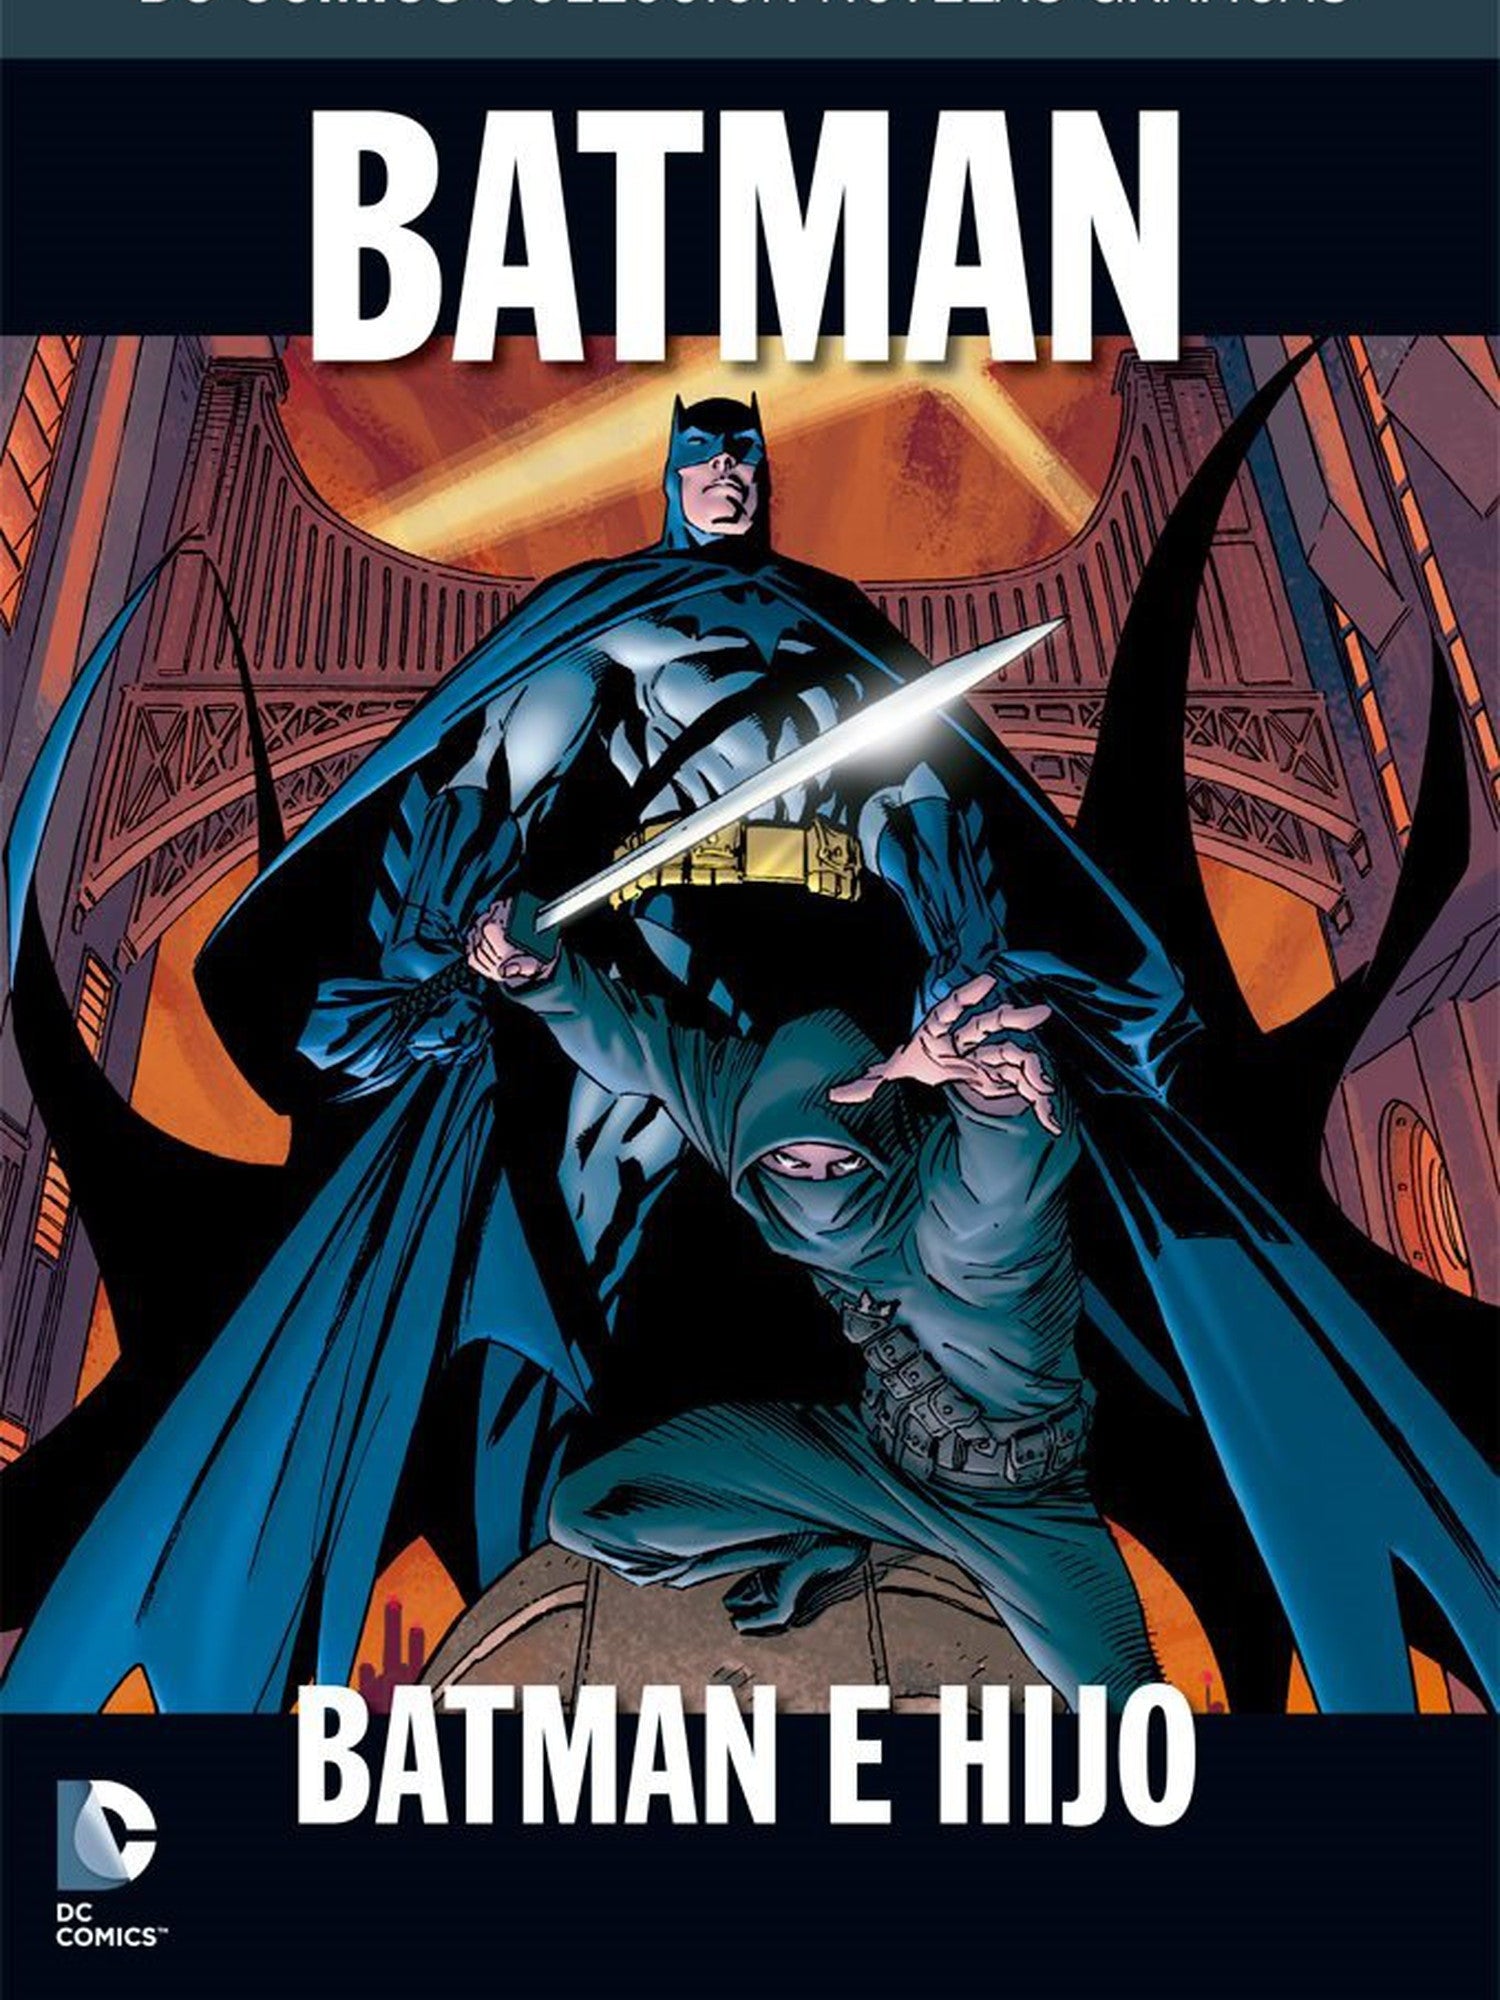 Batman e Hijo Salvat ENcuadrocomics